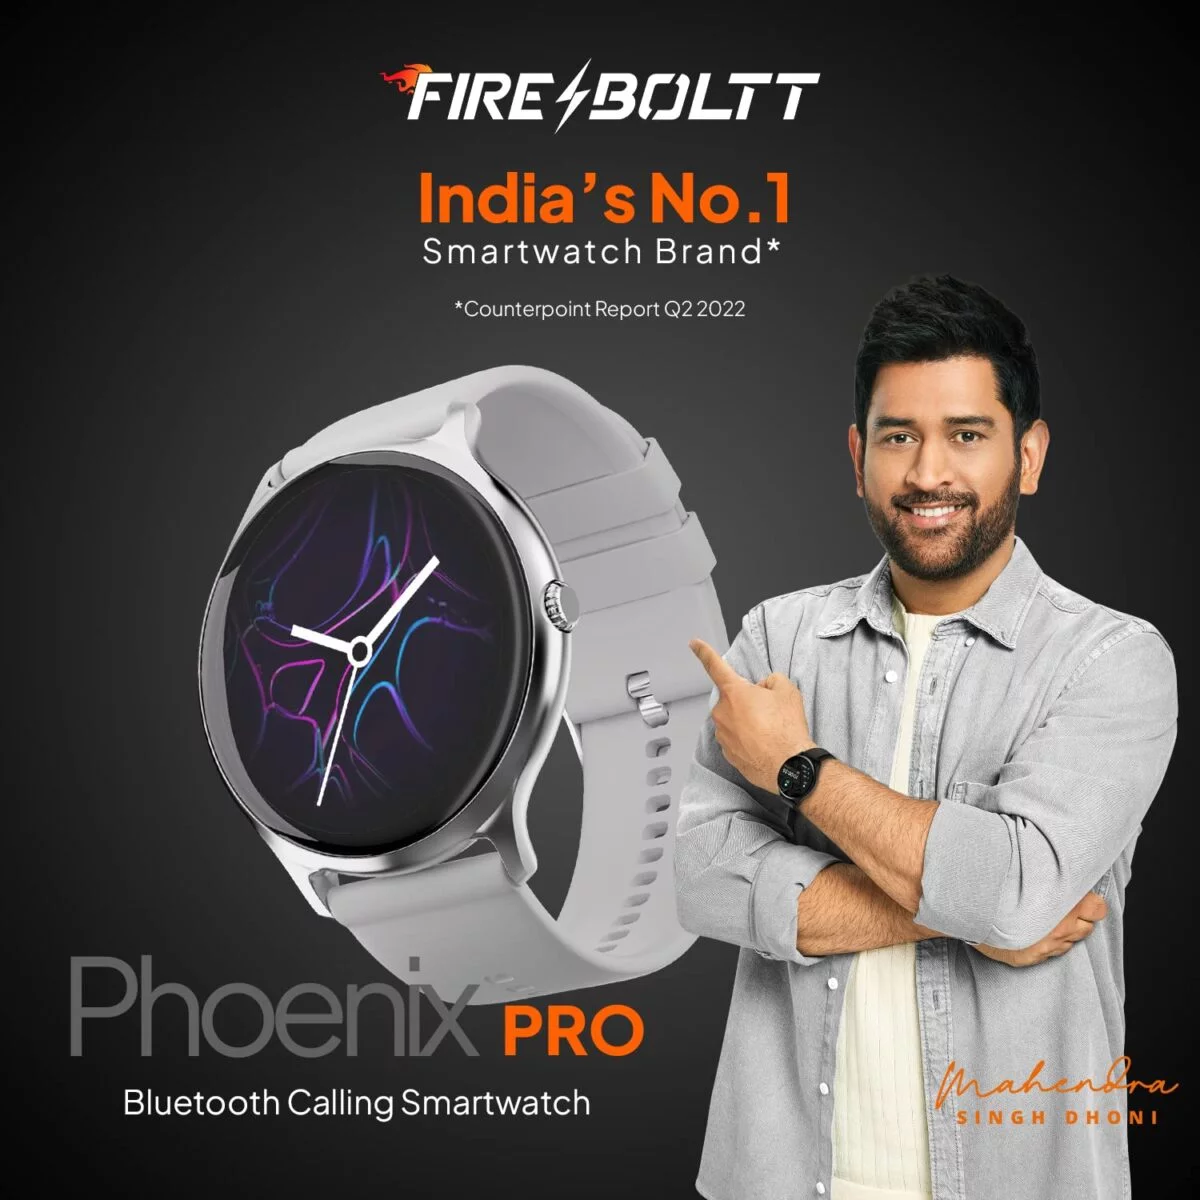 Fire boltt phoenix pro smart watch silver grey 7 fire-boltt phoenix pro smart watch